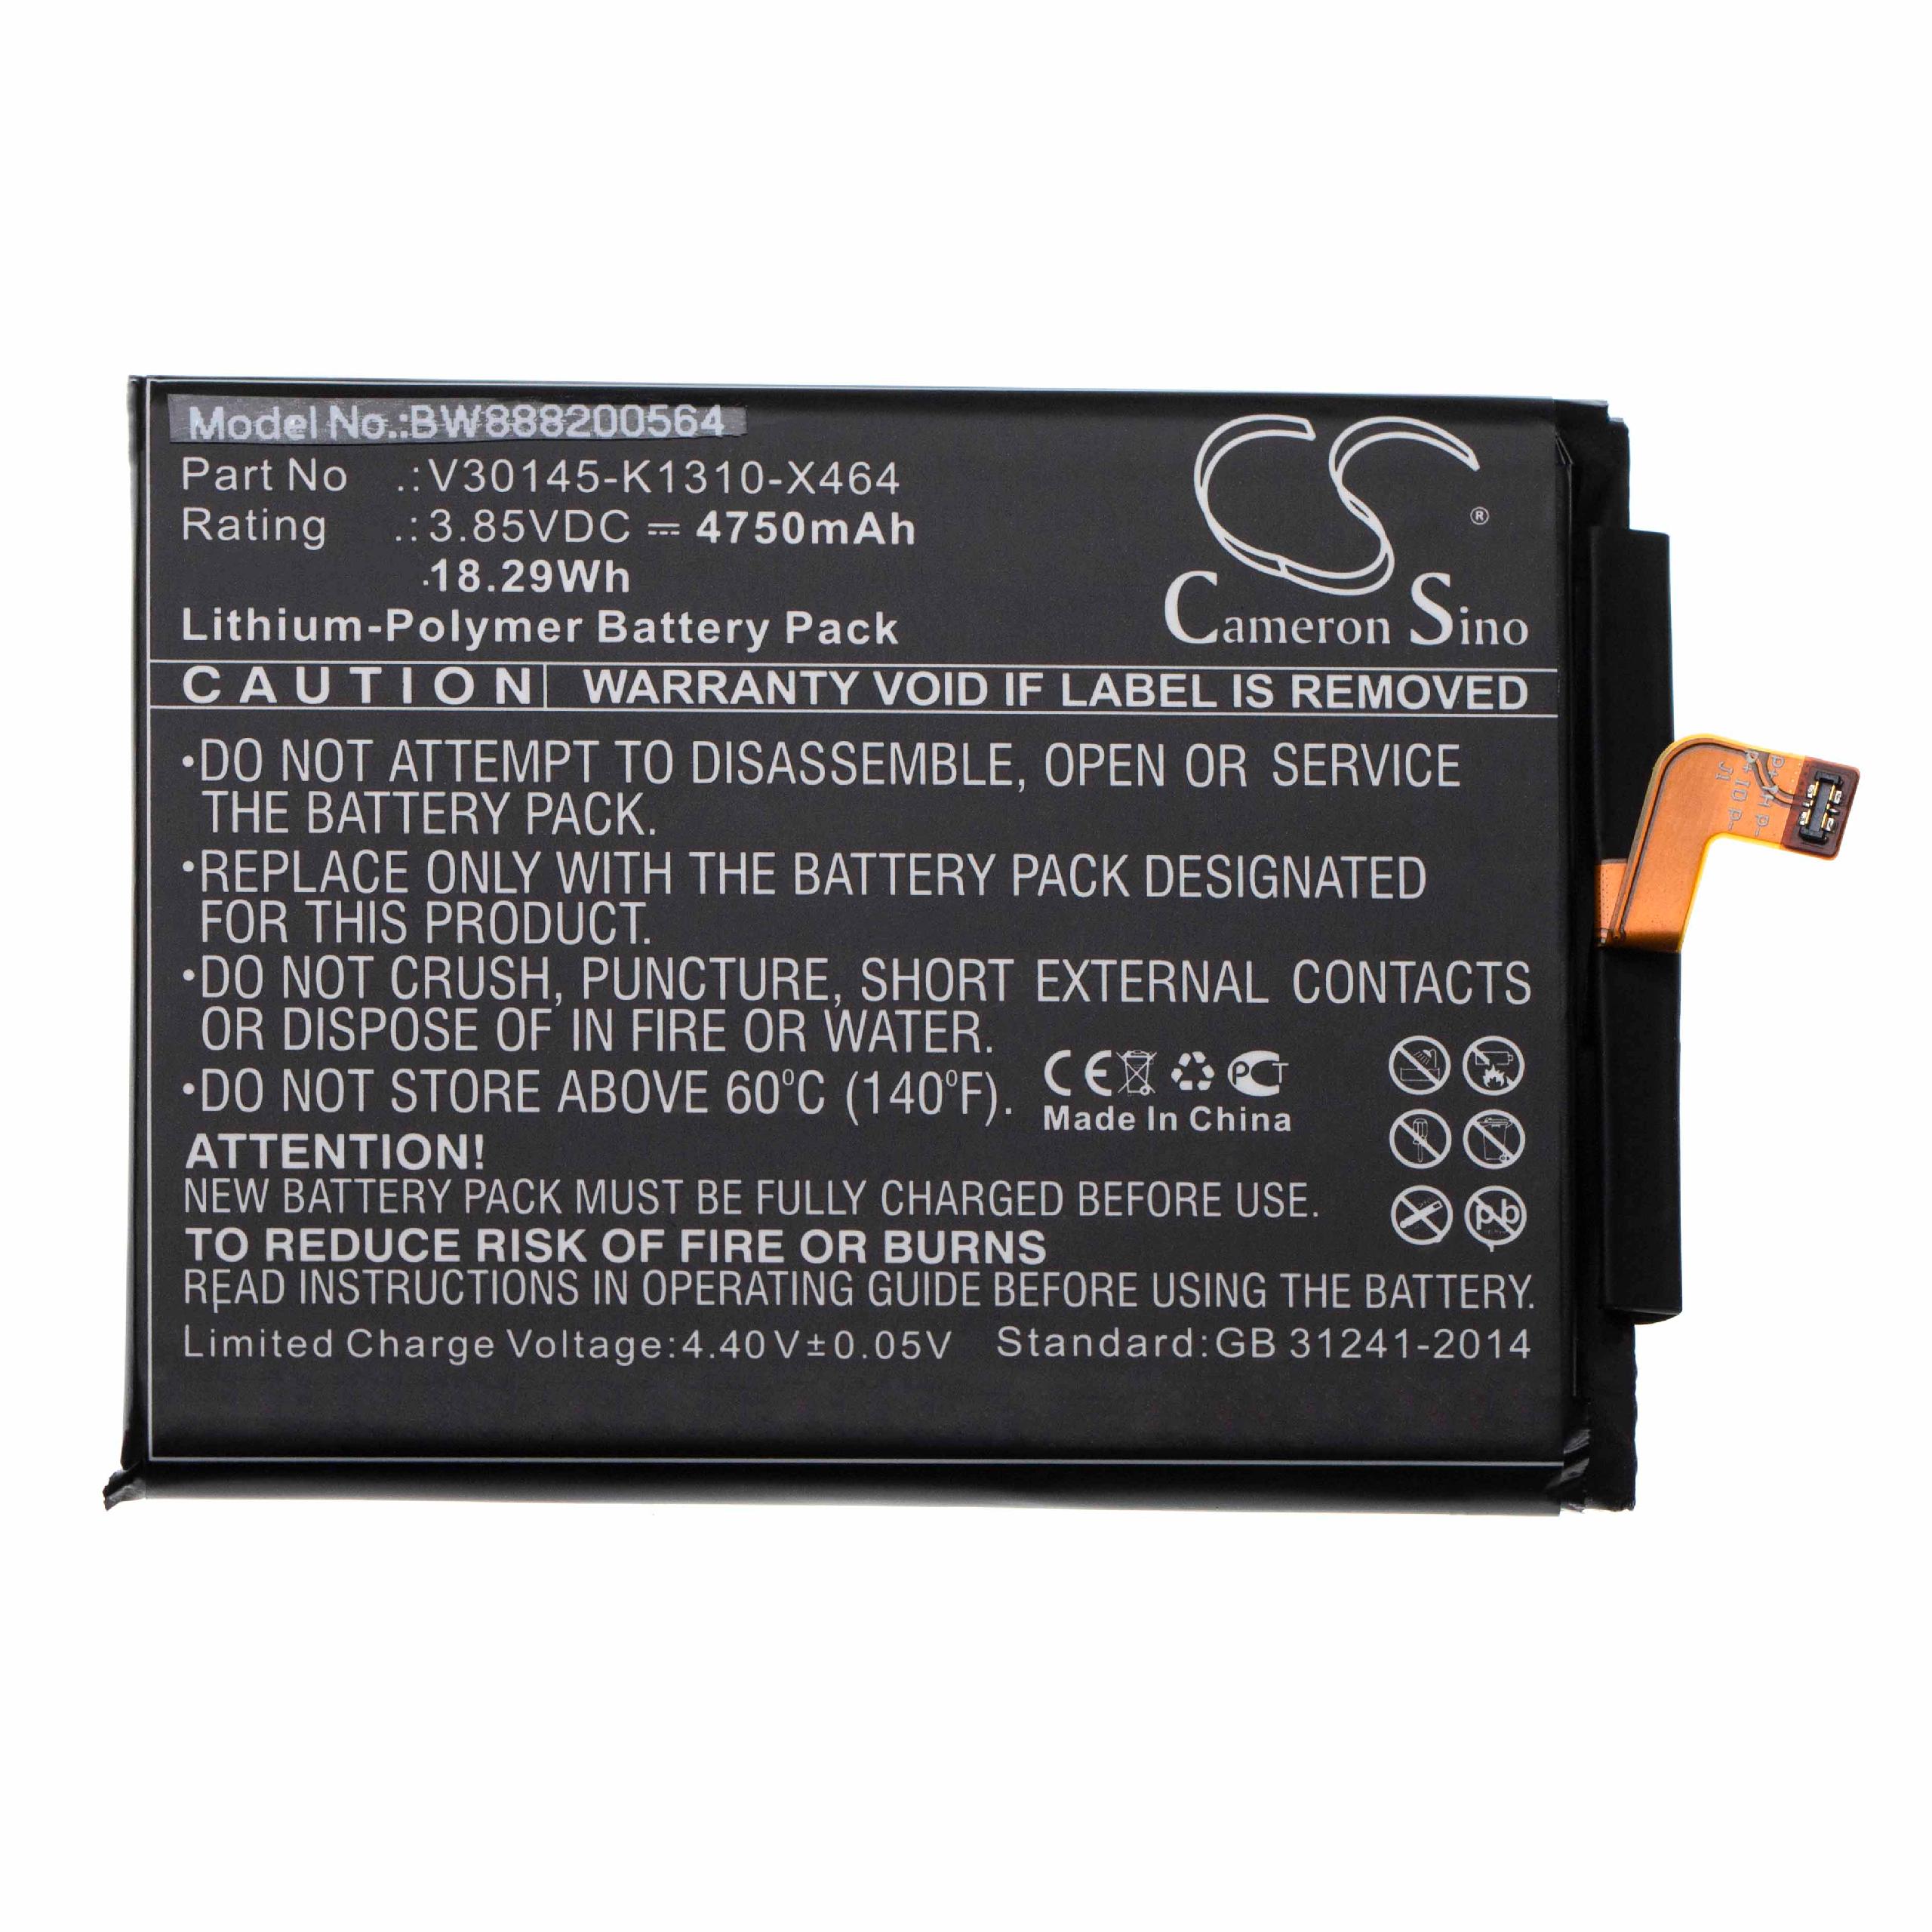 Akumulator bateria do telefonu smartfona zam. Gigaset V30145-K1310-X464 - 4750mAh, 3,85V, LiPo